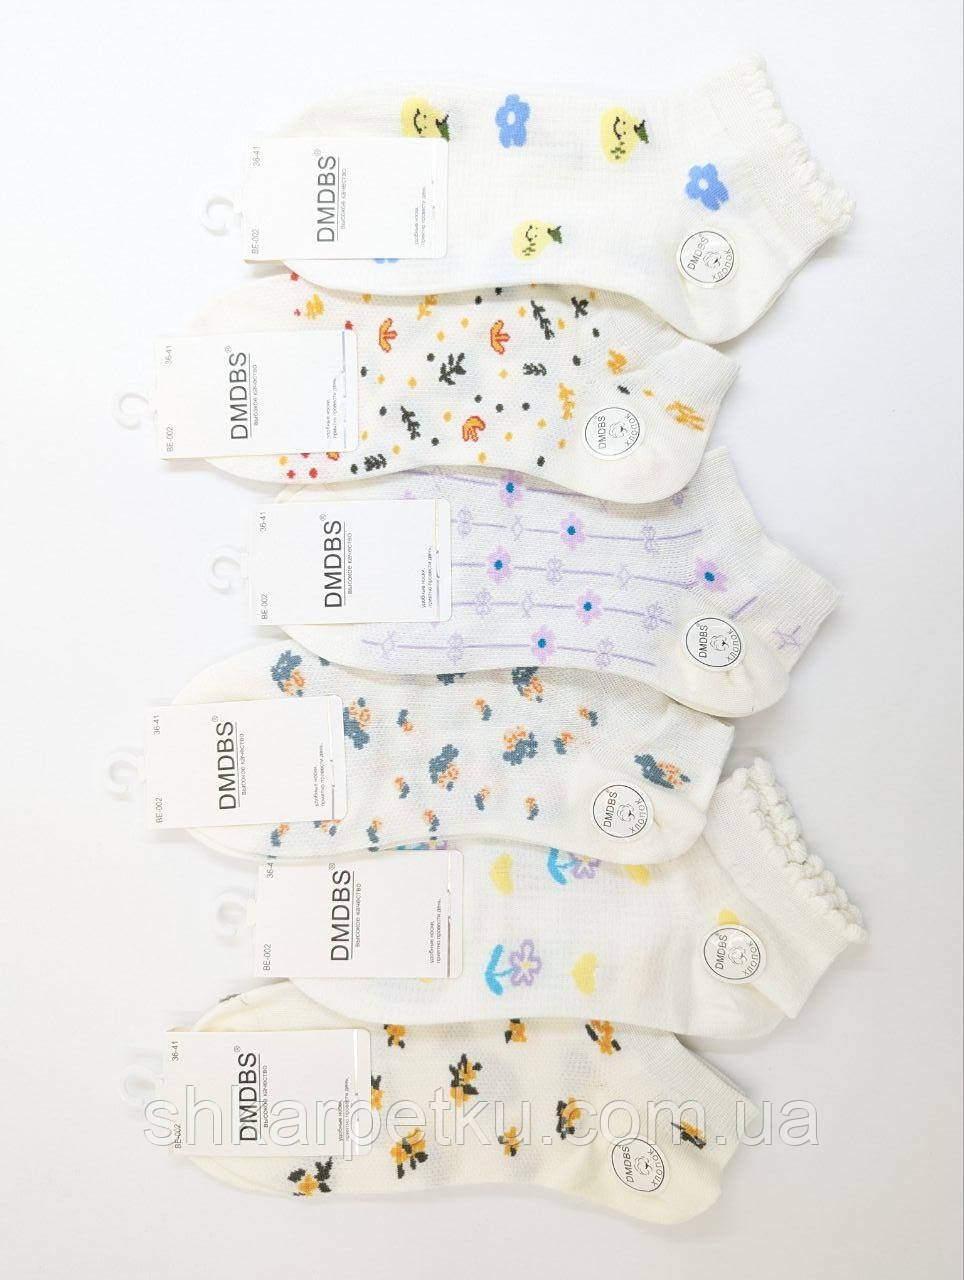 Жіночі короткі шкарпетки DMDBS сітка, літні квітковий принт, розмір 36-41, 10 пар/уп. асорті